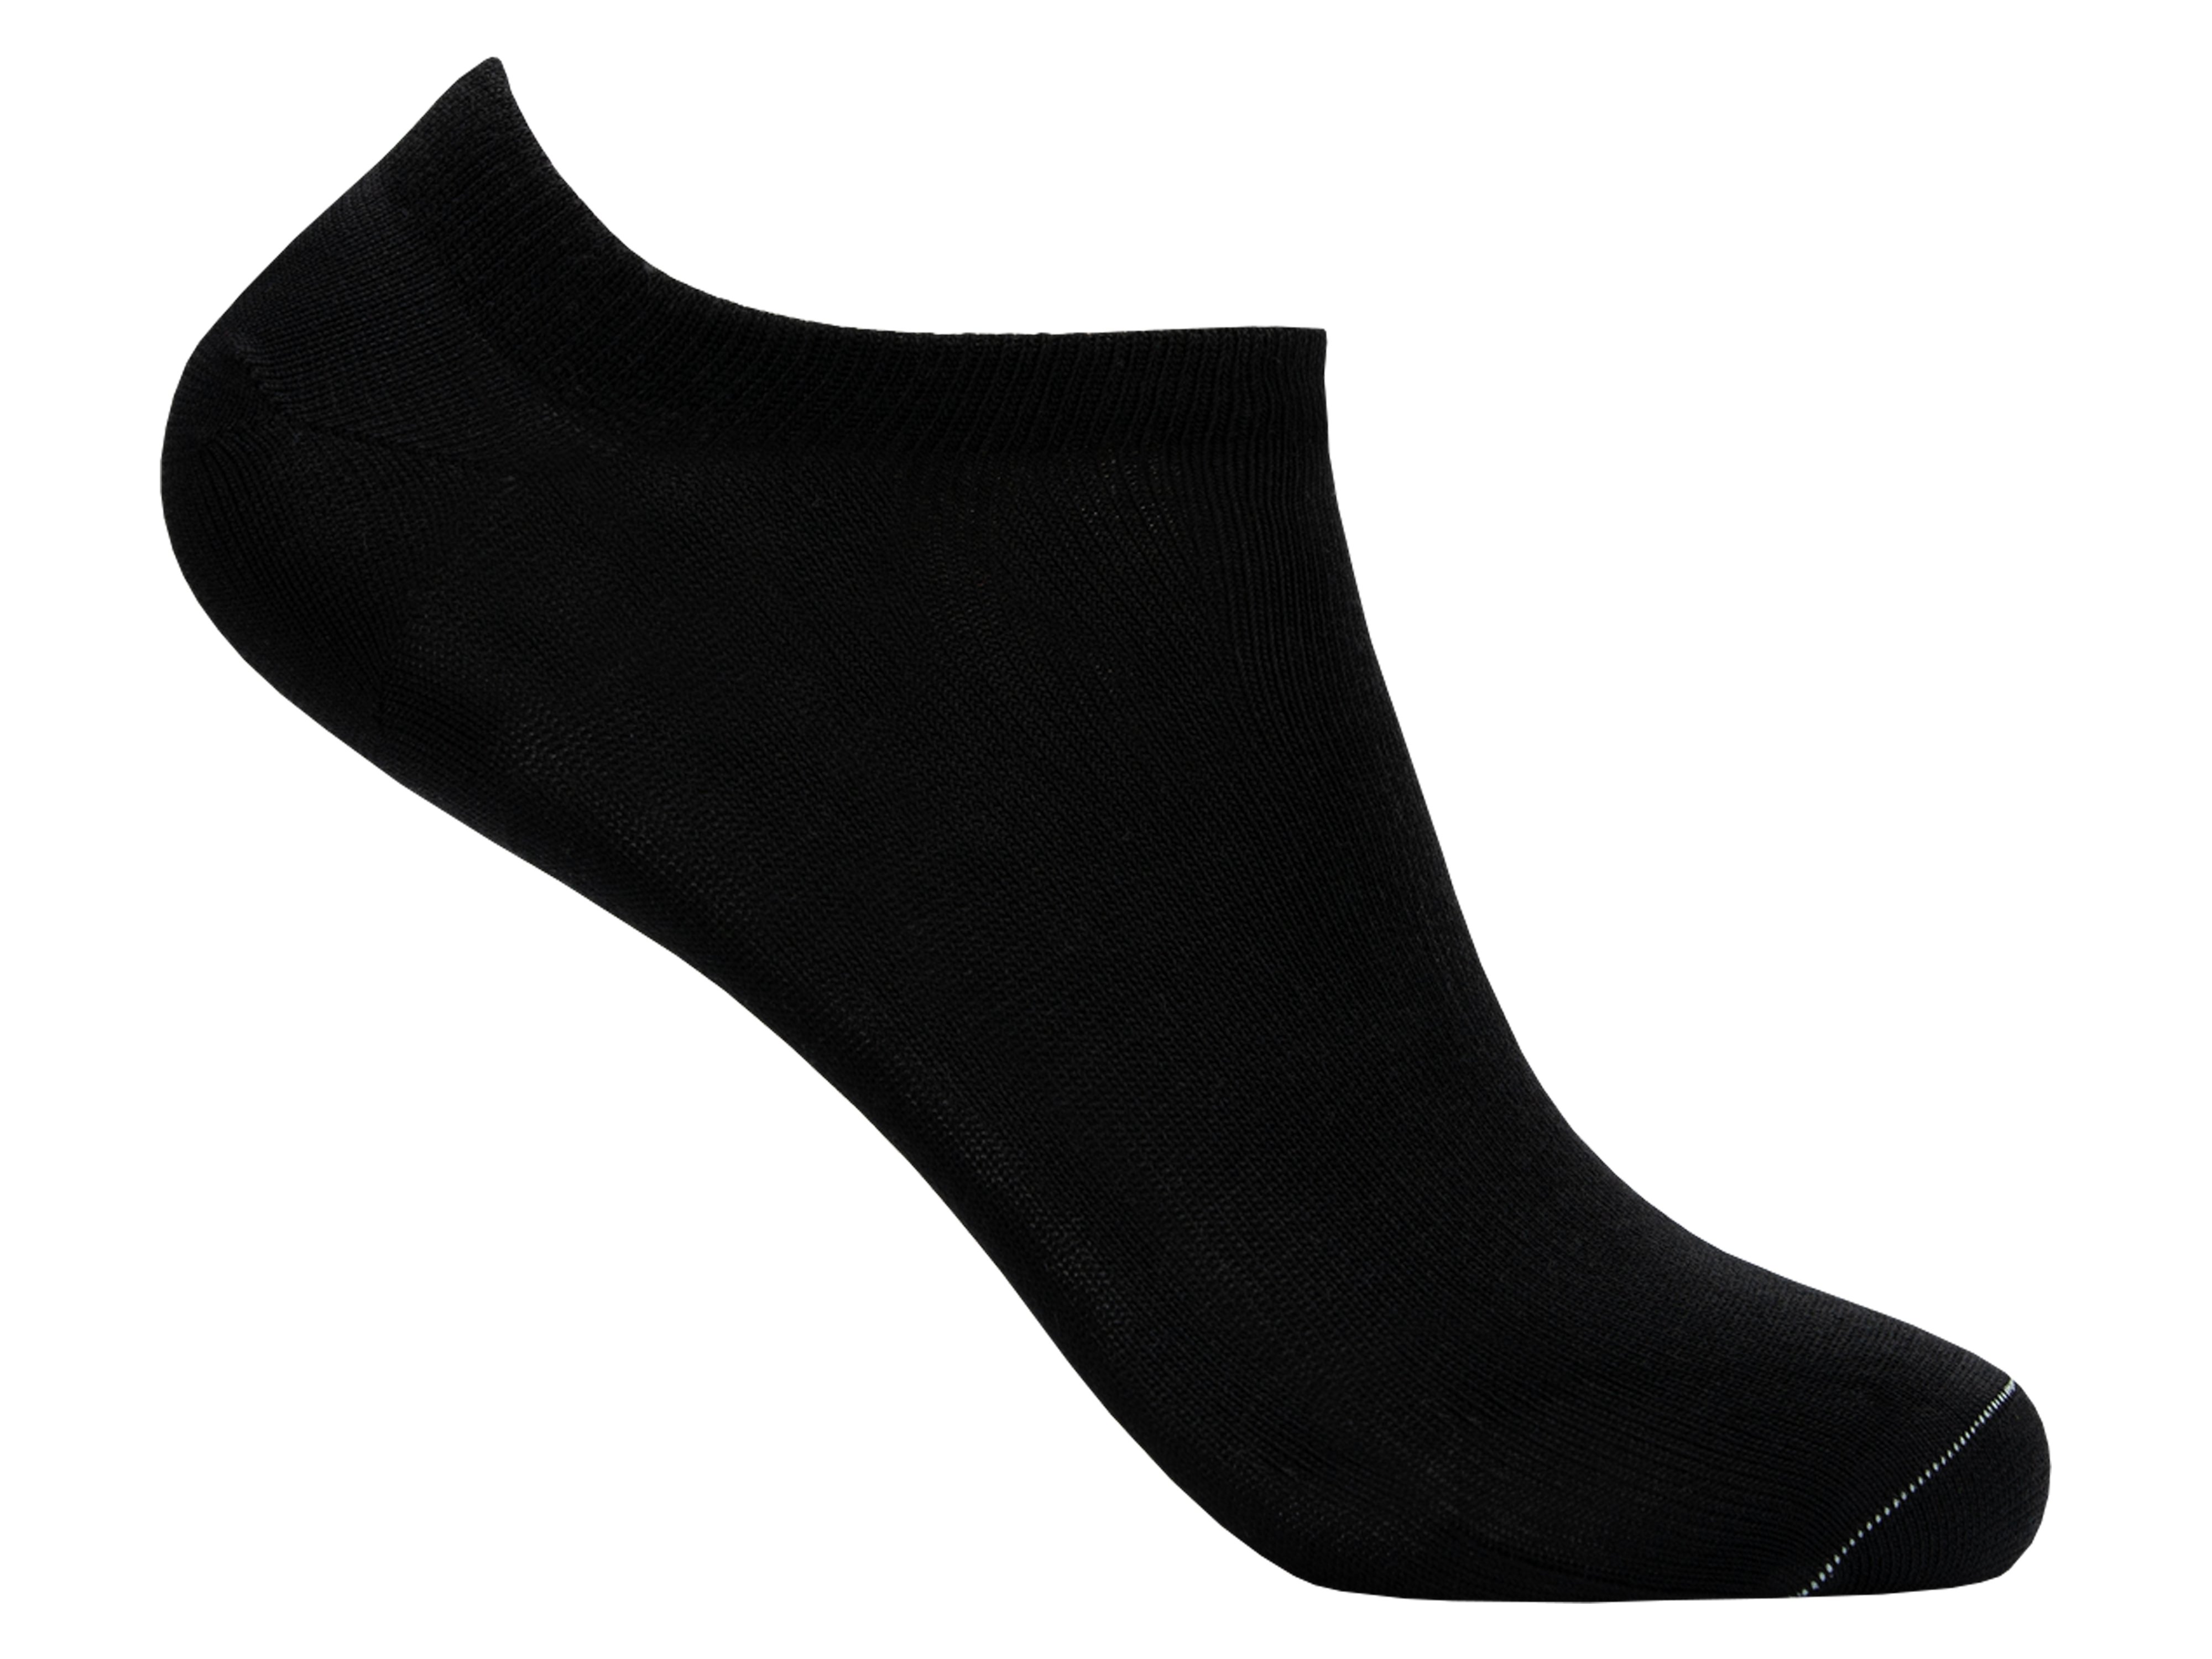 LY by Tufte Low Sock Black, Størrelse 41-46, 1 par.